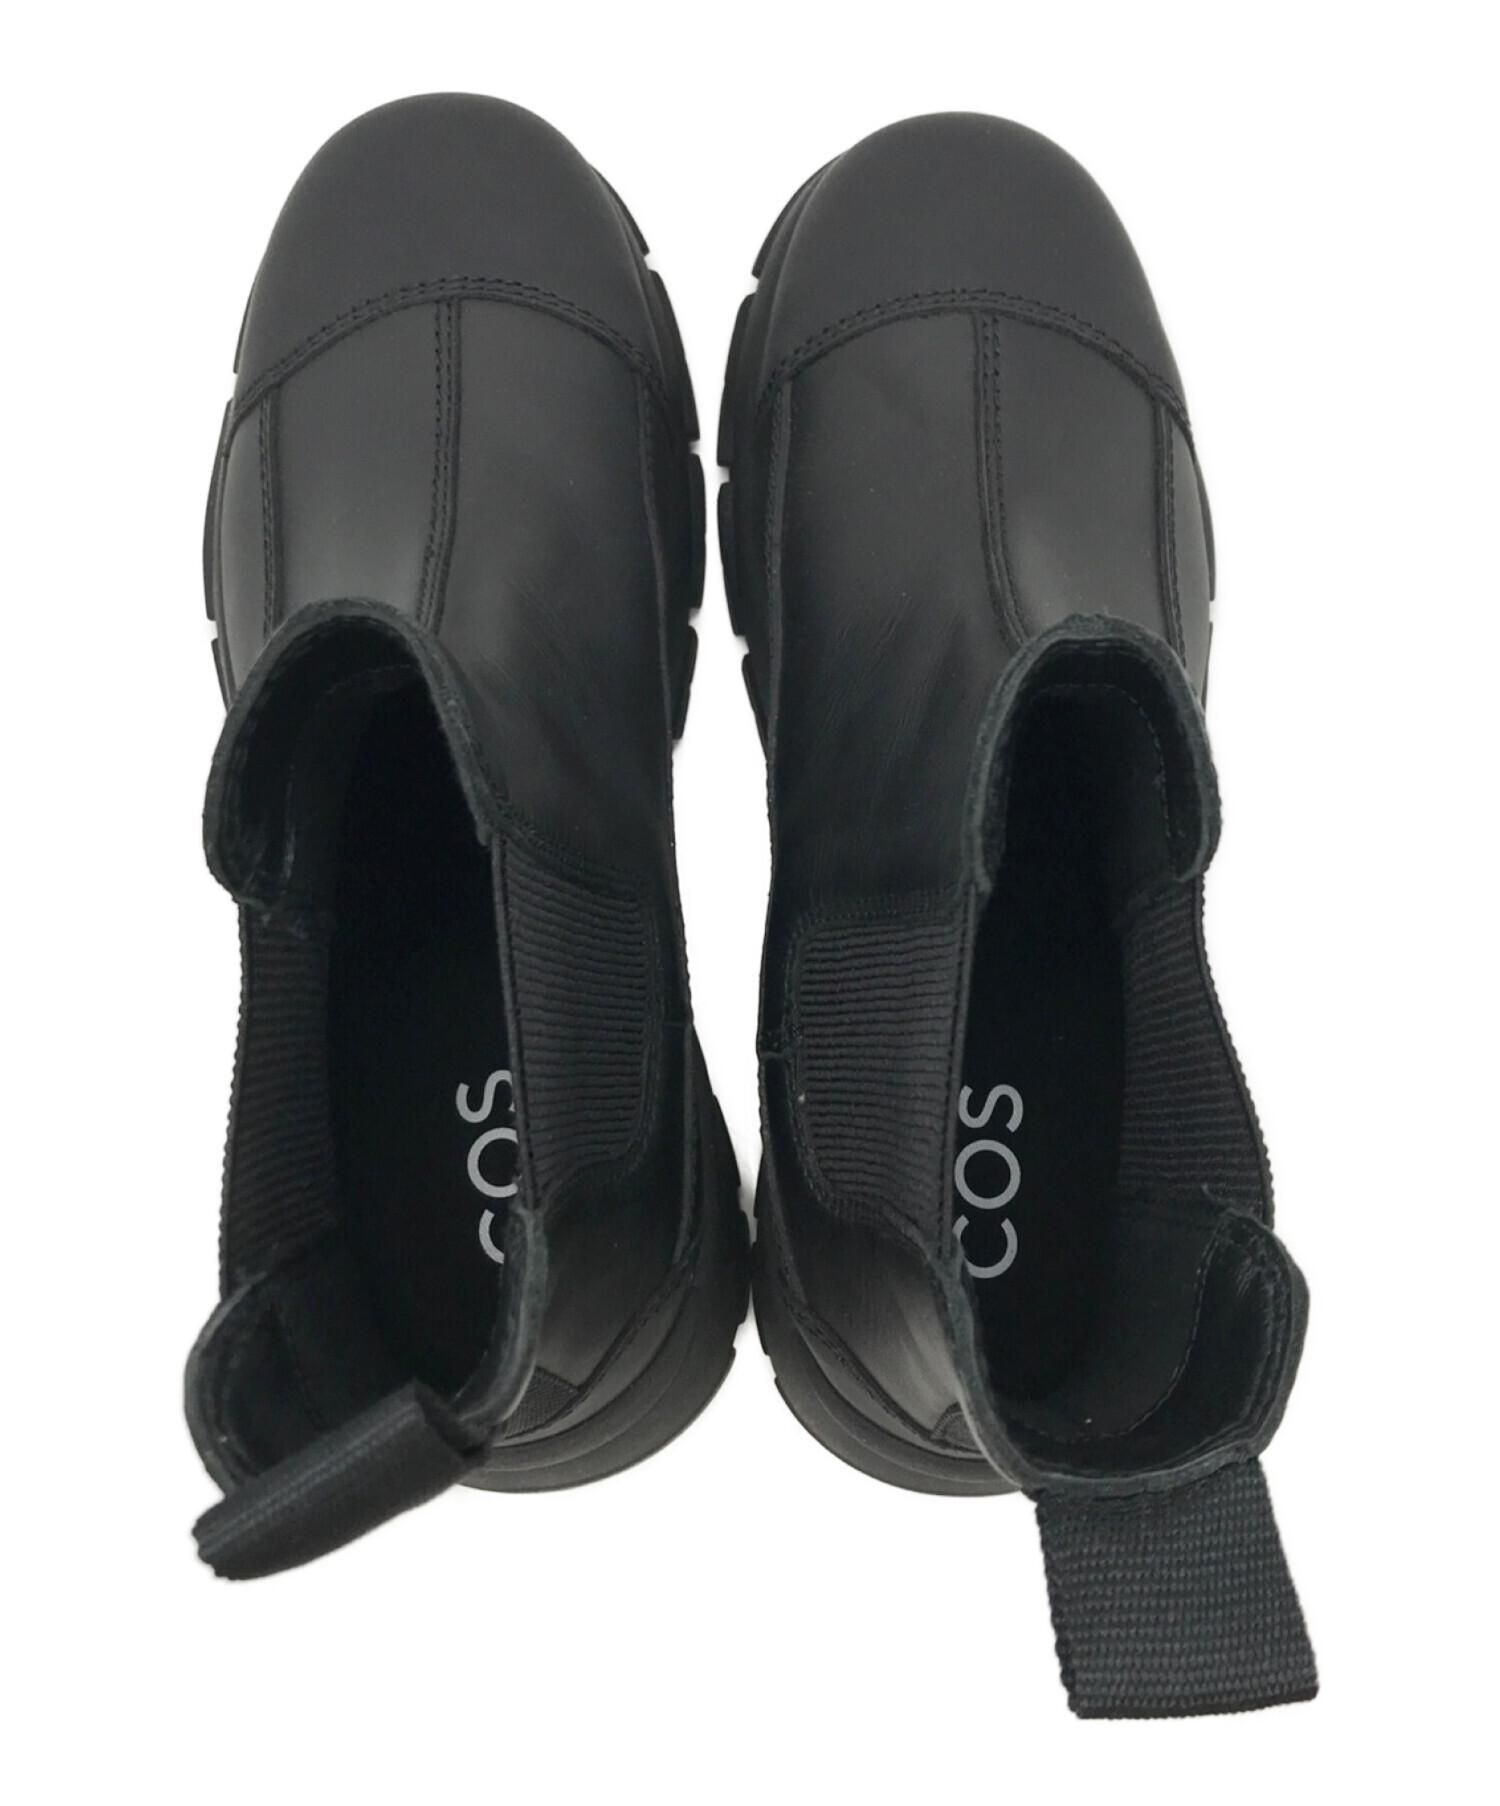 COS (コス) サイドゴアブーツ ブラック サイズ:26.5